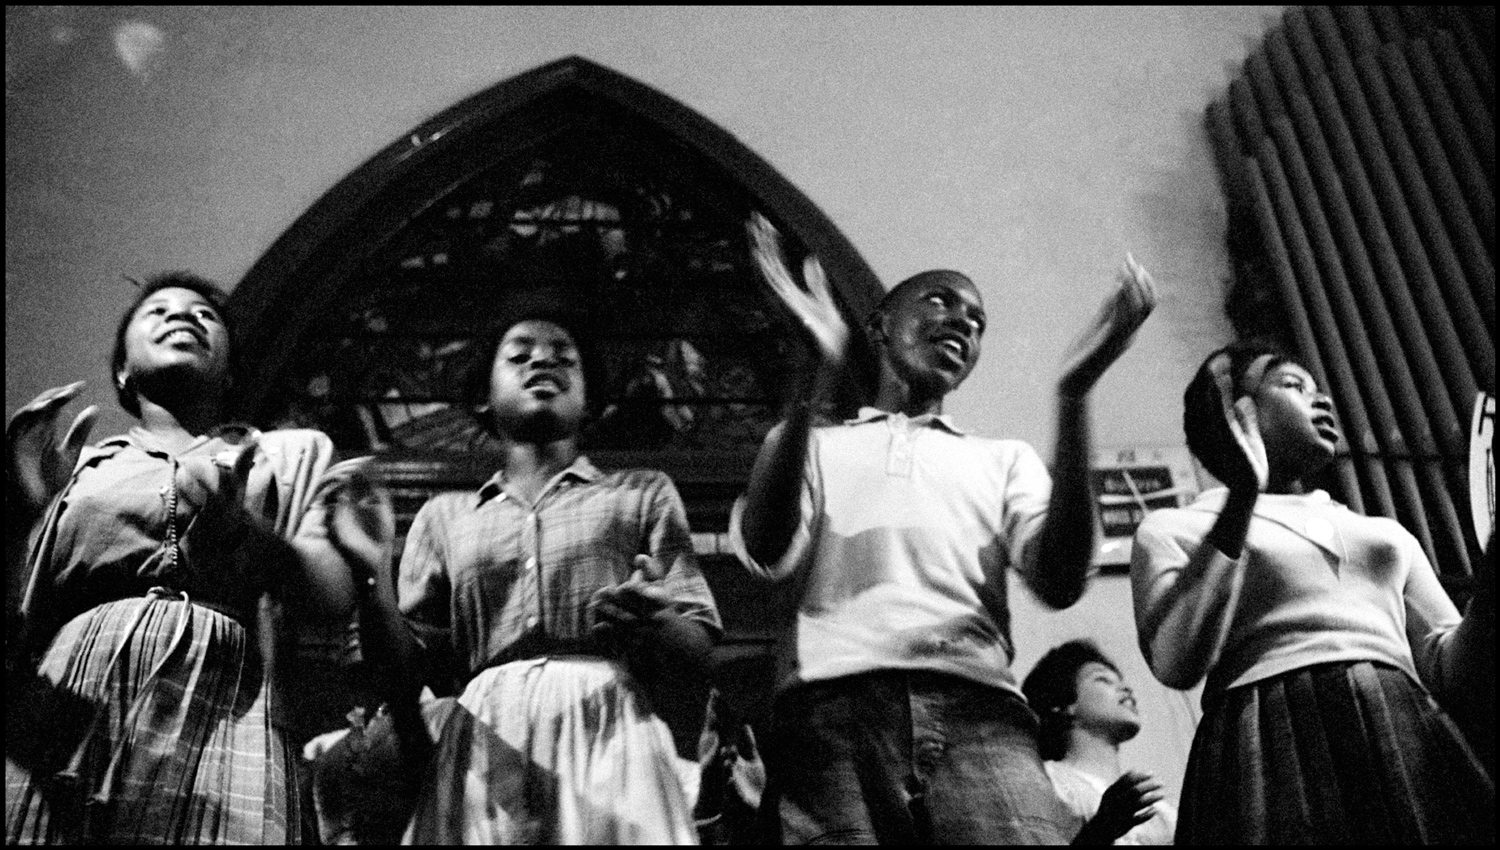 Teenagers lead freedom singing in Tabernacle Baptist Church, 1963, Danny Lyon, crmvet.org